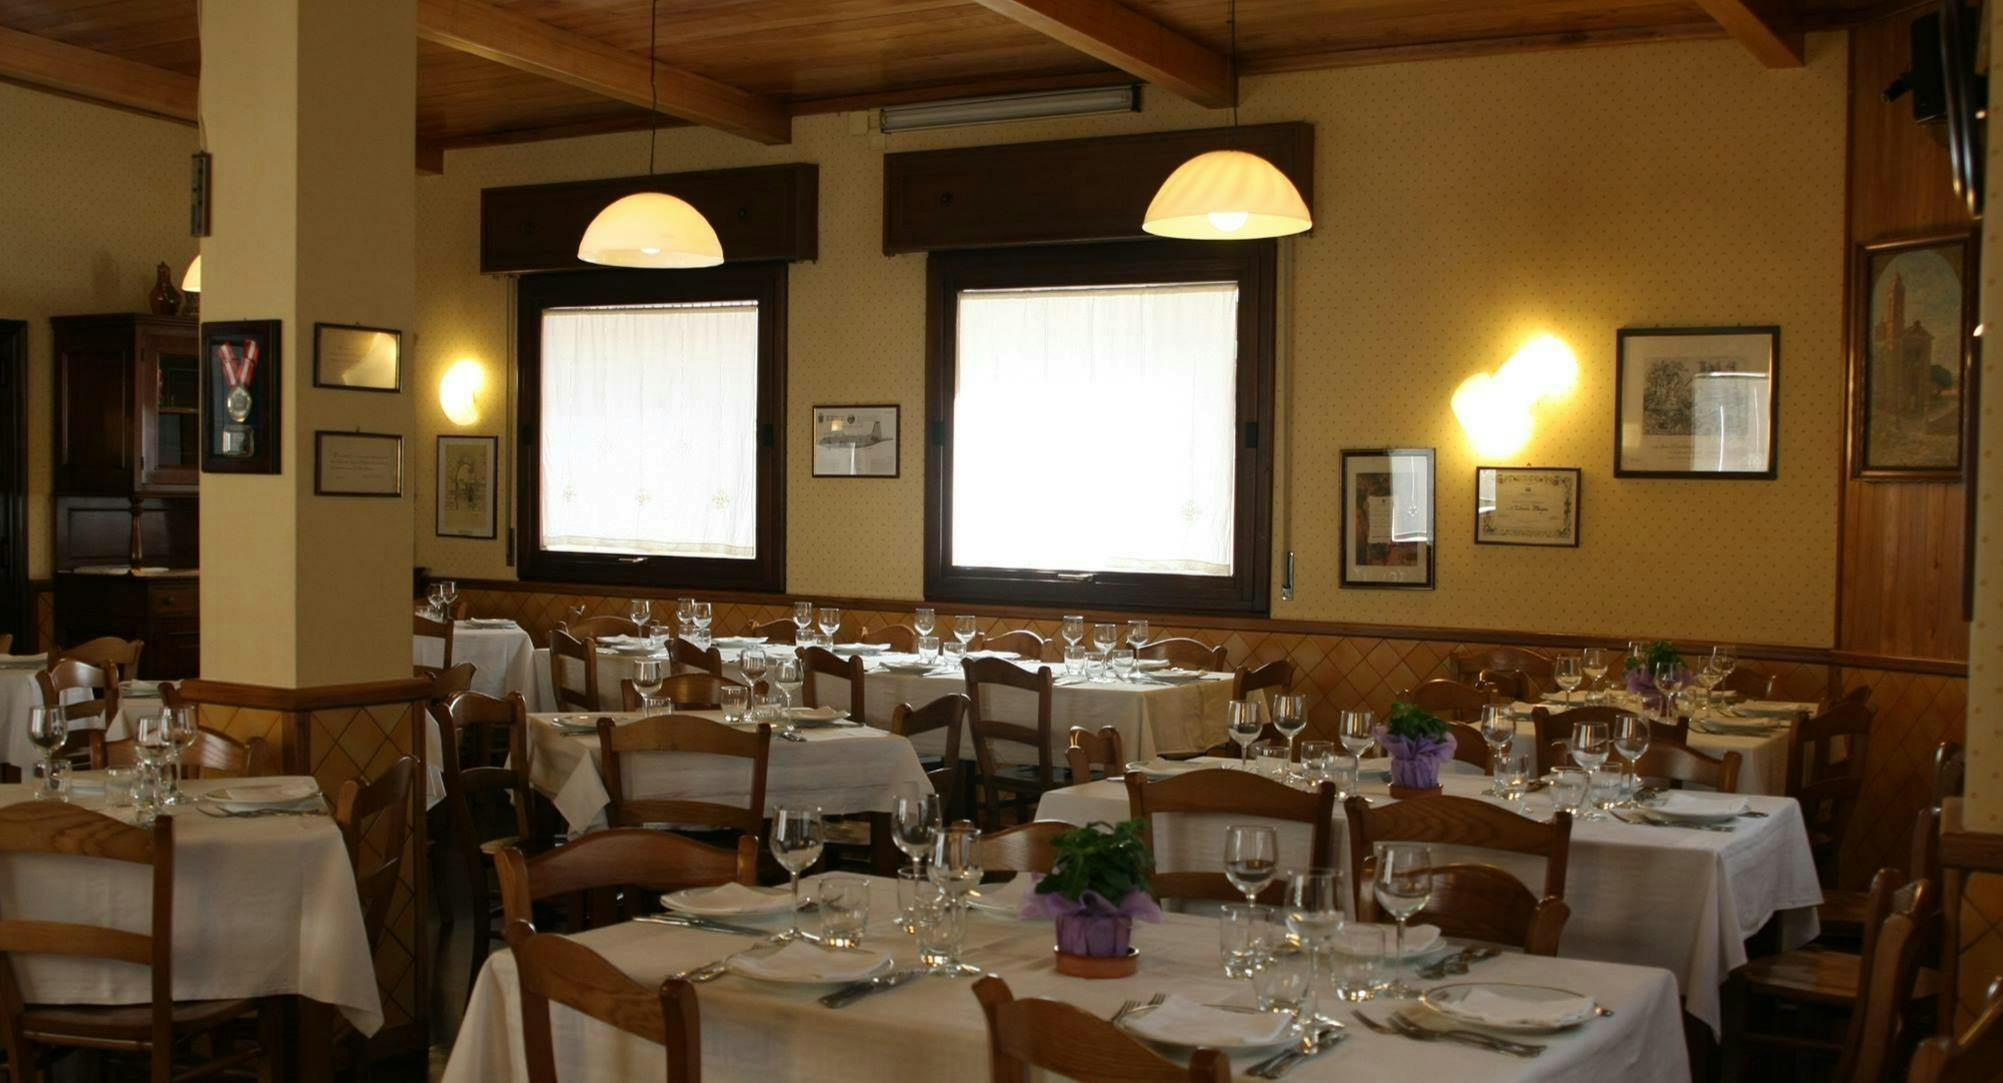 Photo of restaurant Majore in Chiaramonte Gulfi, Ragusa